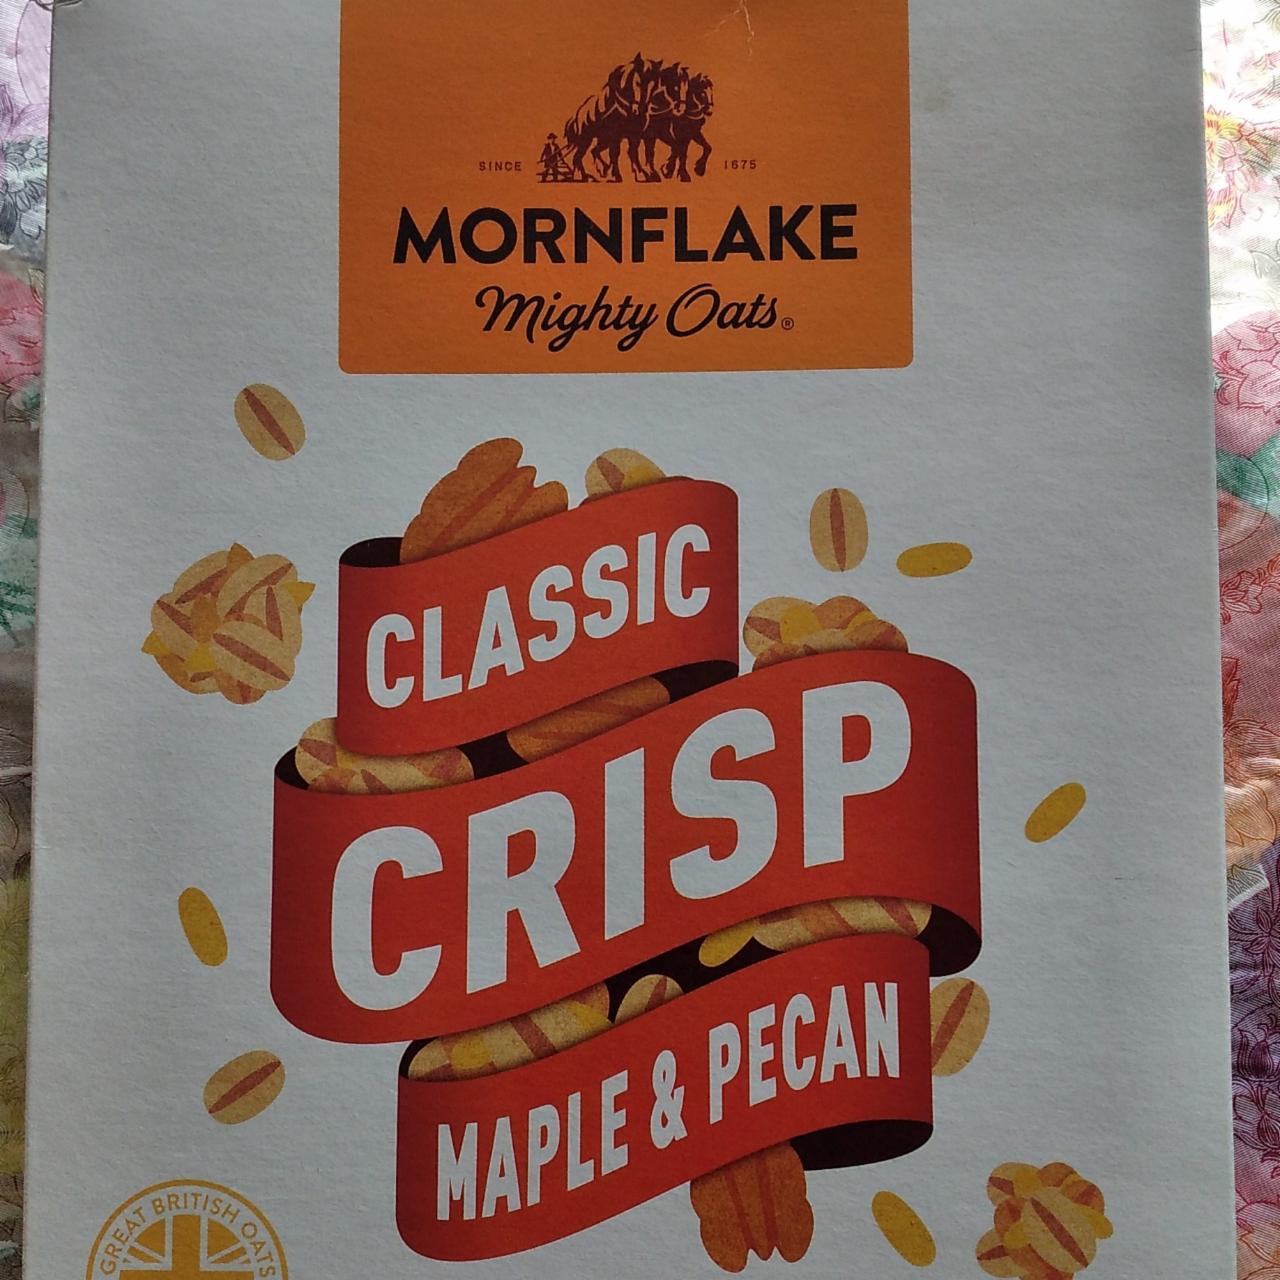 Фото - Хлопья запечённые с орехом пекан Oat flakes Classic Crisp Maple & Pecan Mornflake